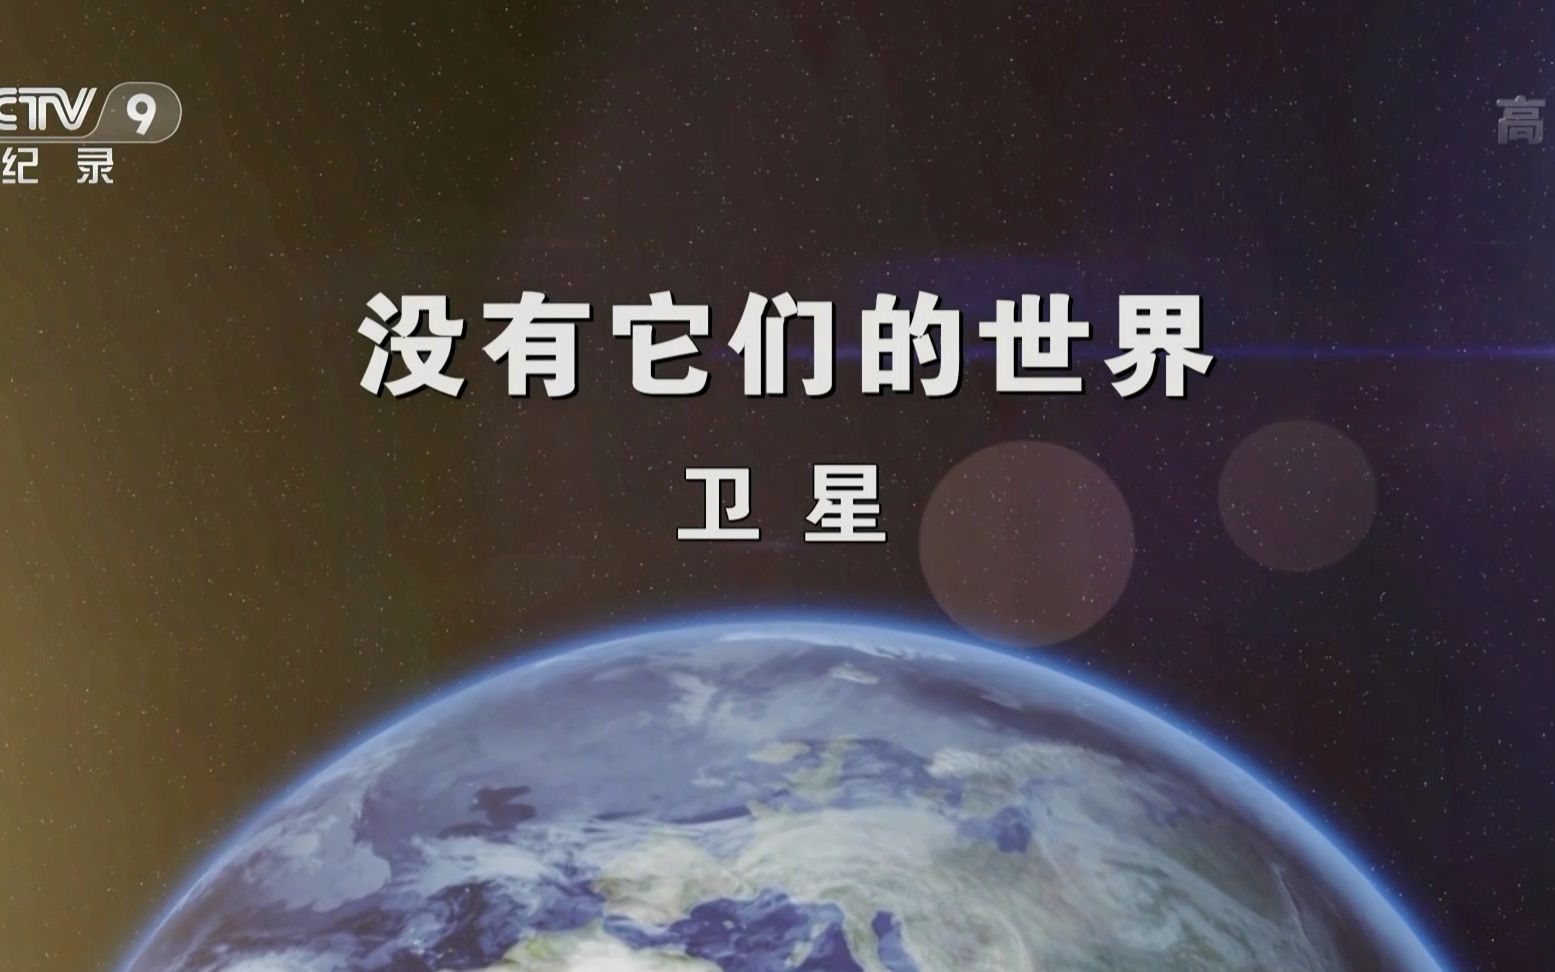 【央视/1080P】没有它们的世界【汉语中字/4集全】